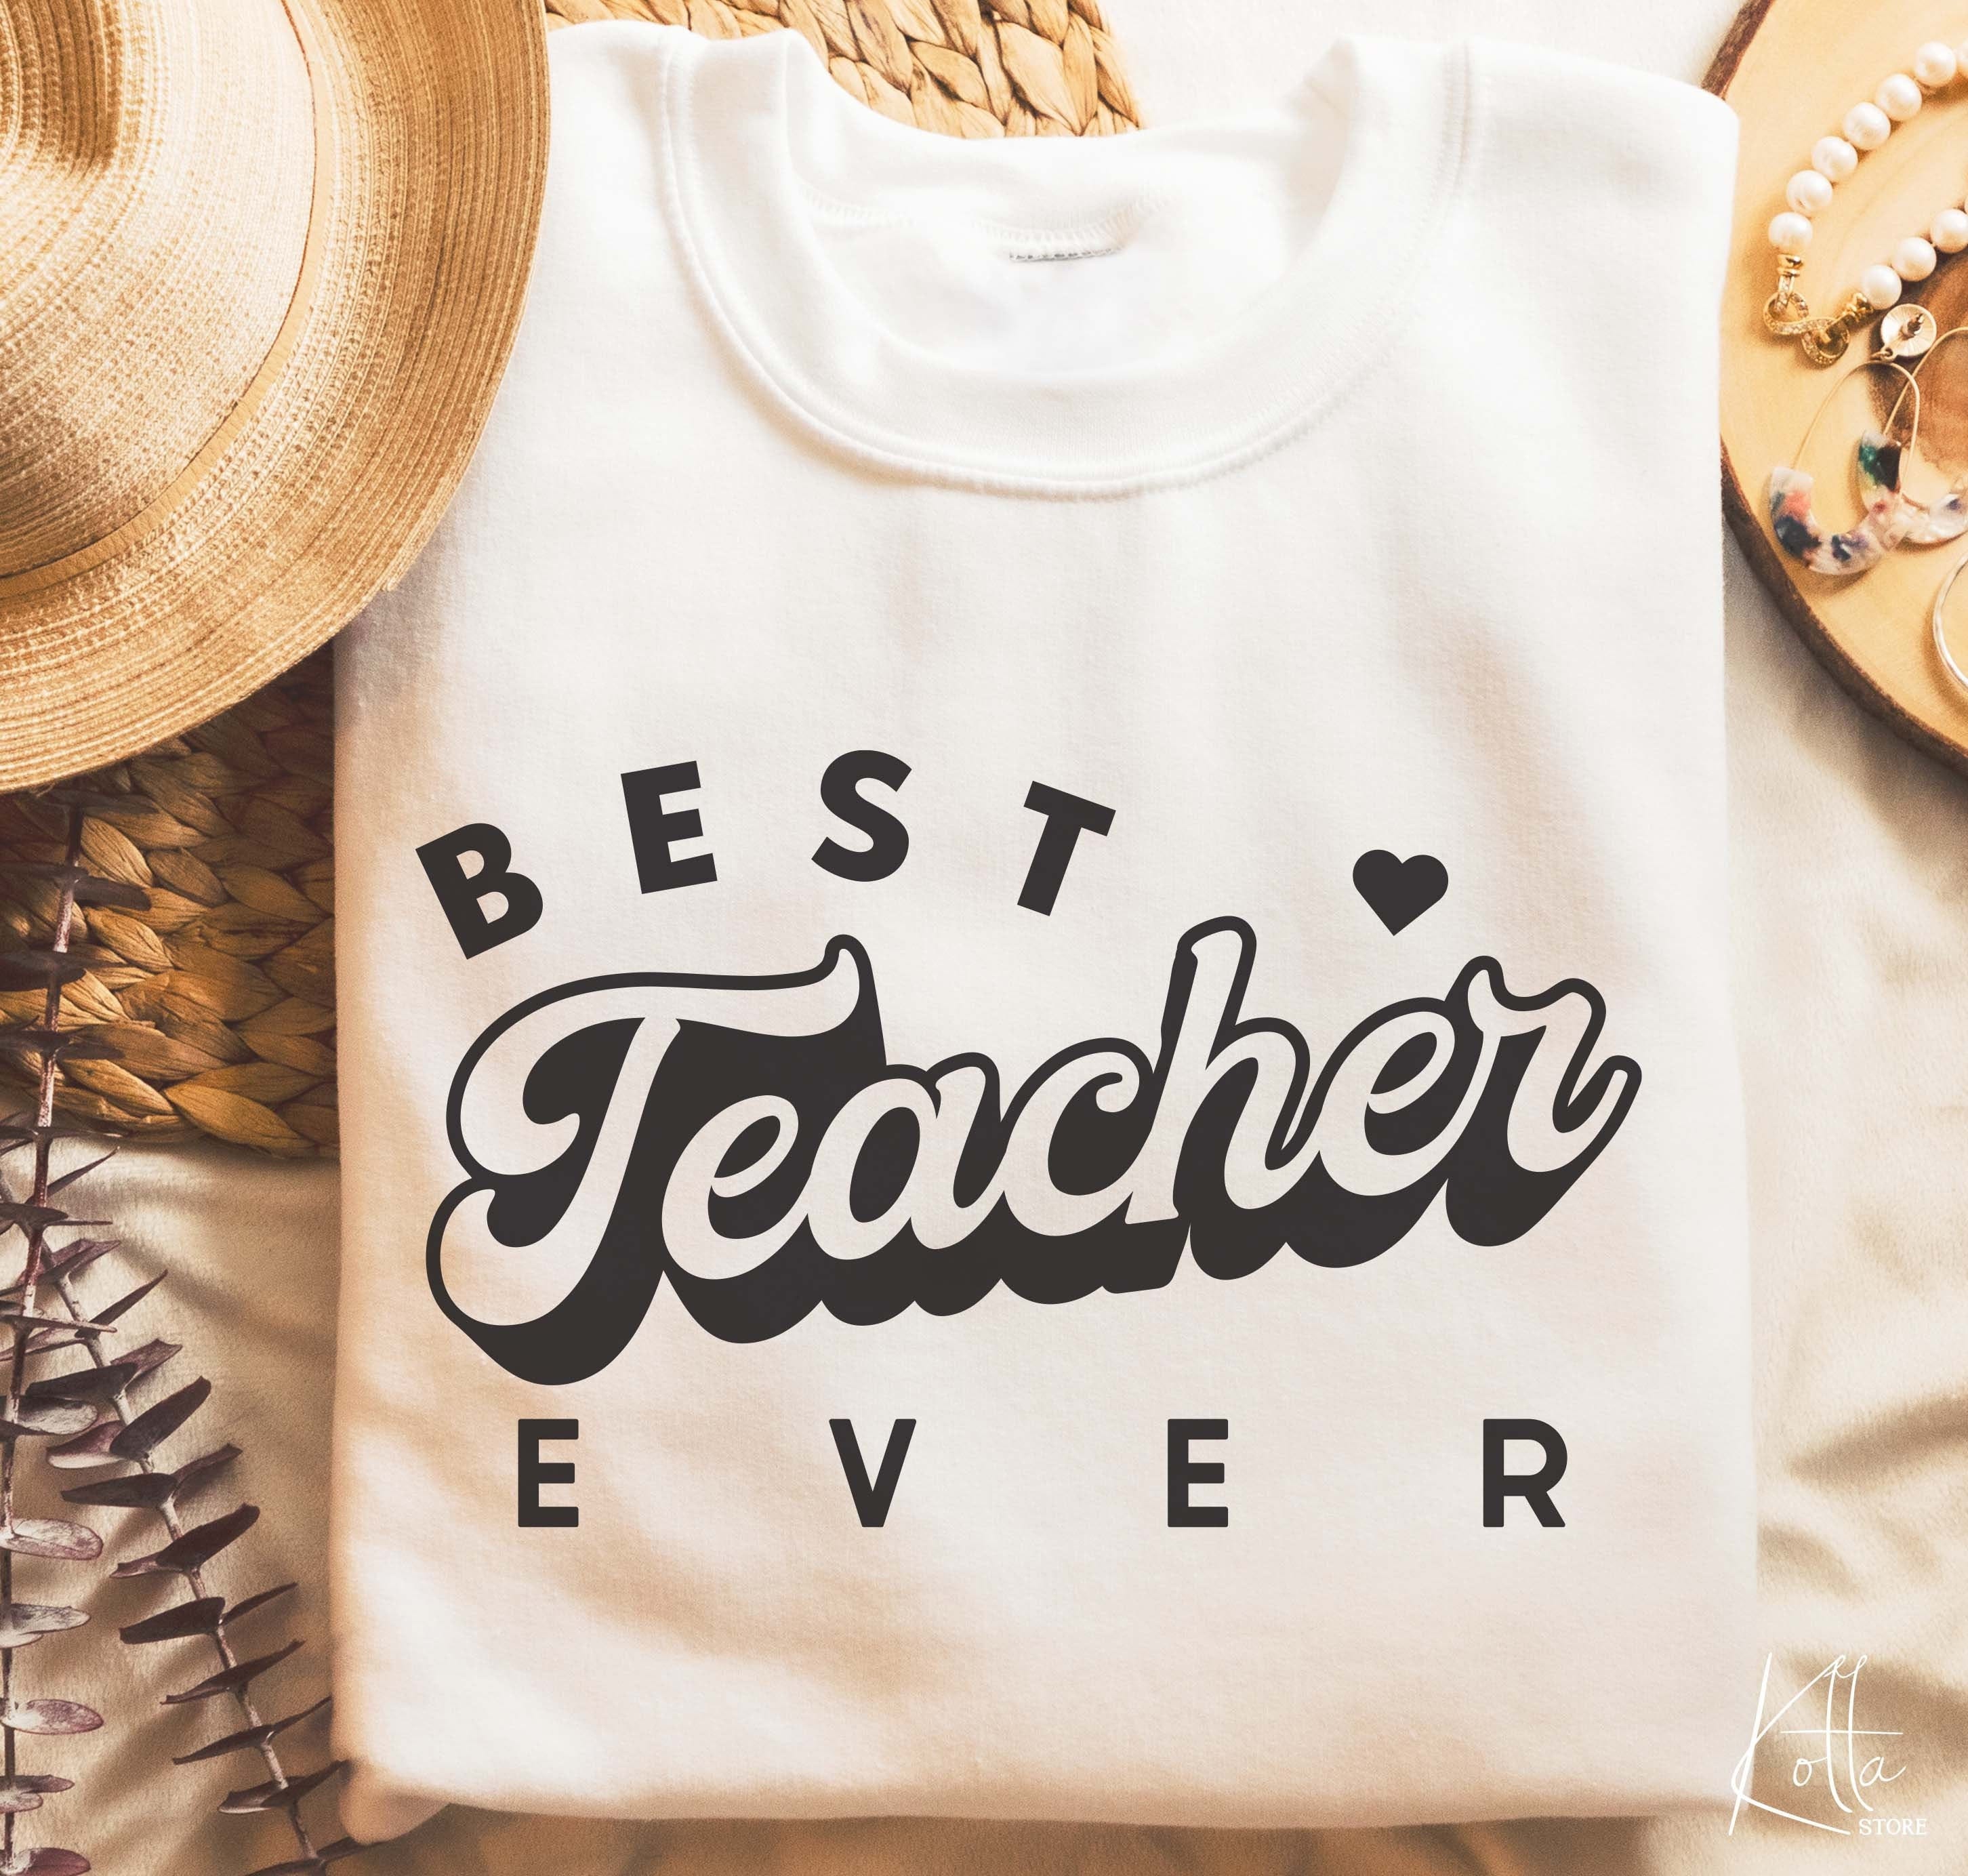 Best Teacher Ever svg, Teacher life svg, Teacher Quotes shirt gift svg, png, dfx, Cricut cut file.